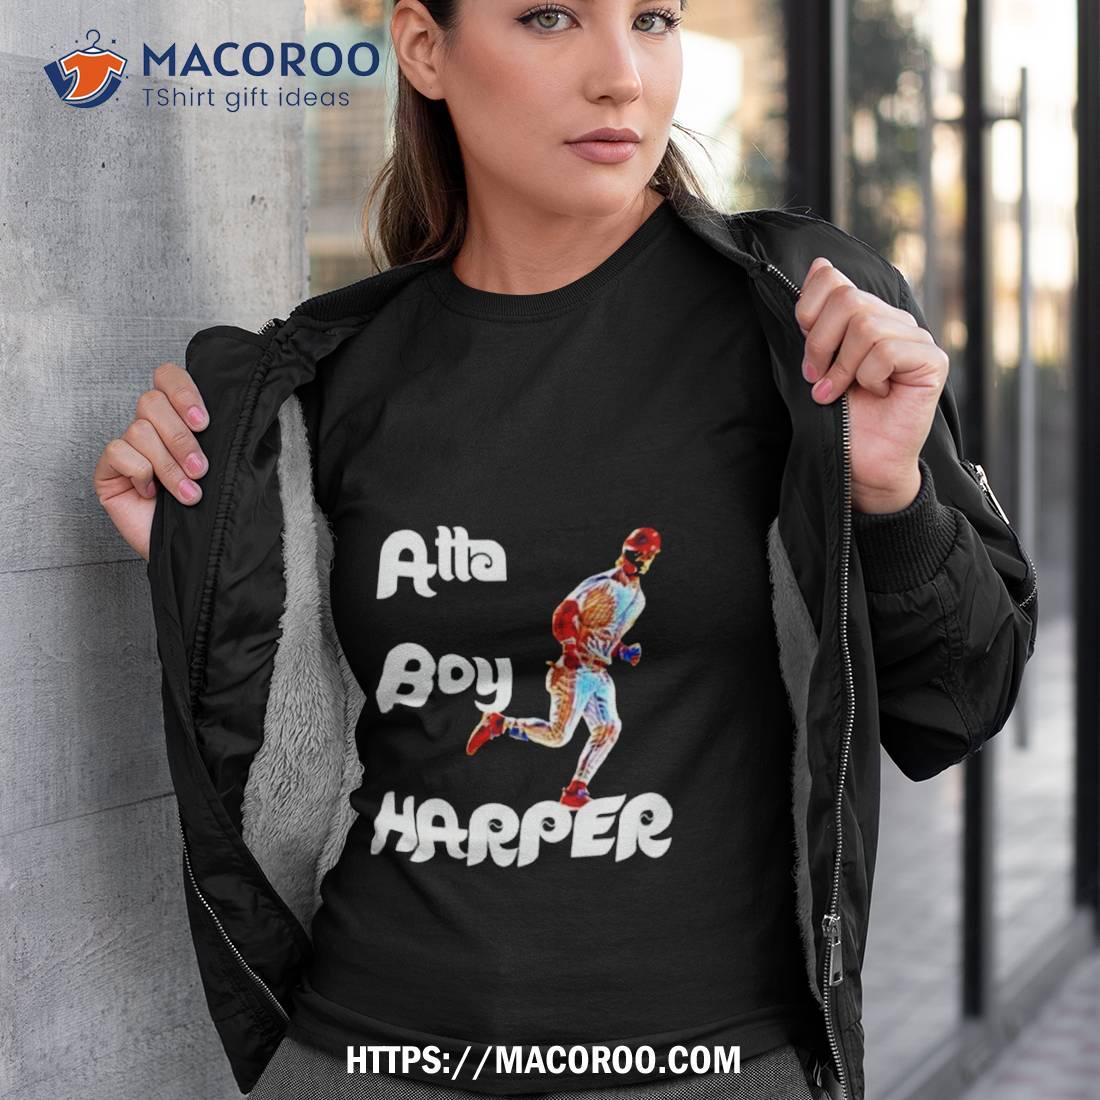 Bryce Harper Jersey Cosplay Tshirt Sweatshirt Hoodie Mens Womens